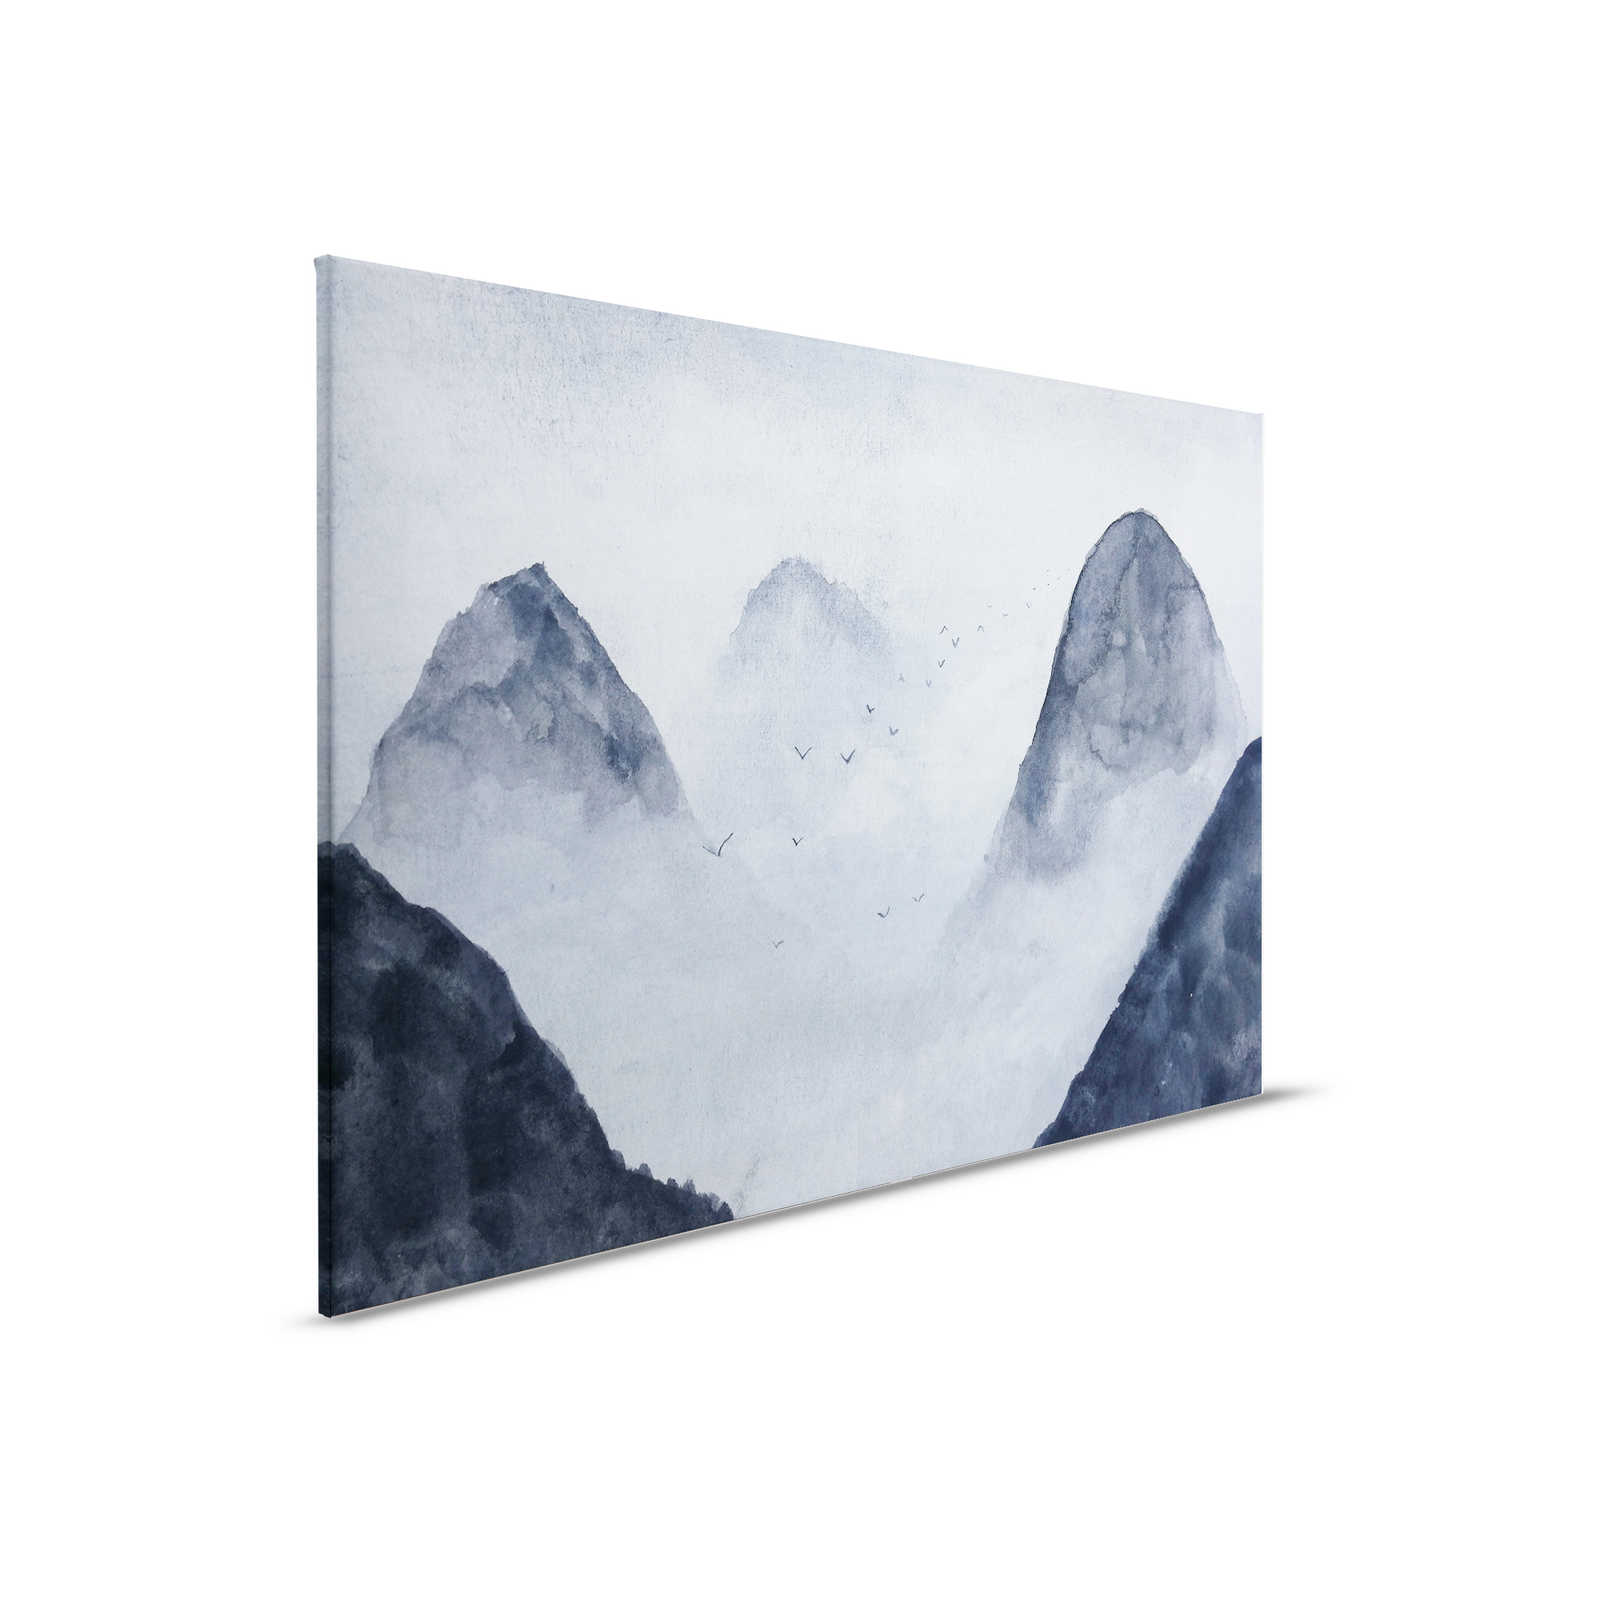         Canvas Mountain Landscape Watercolour - 0.90 m x 0.60 m
    